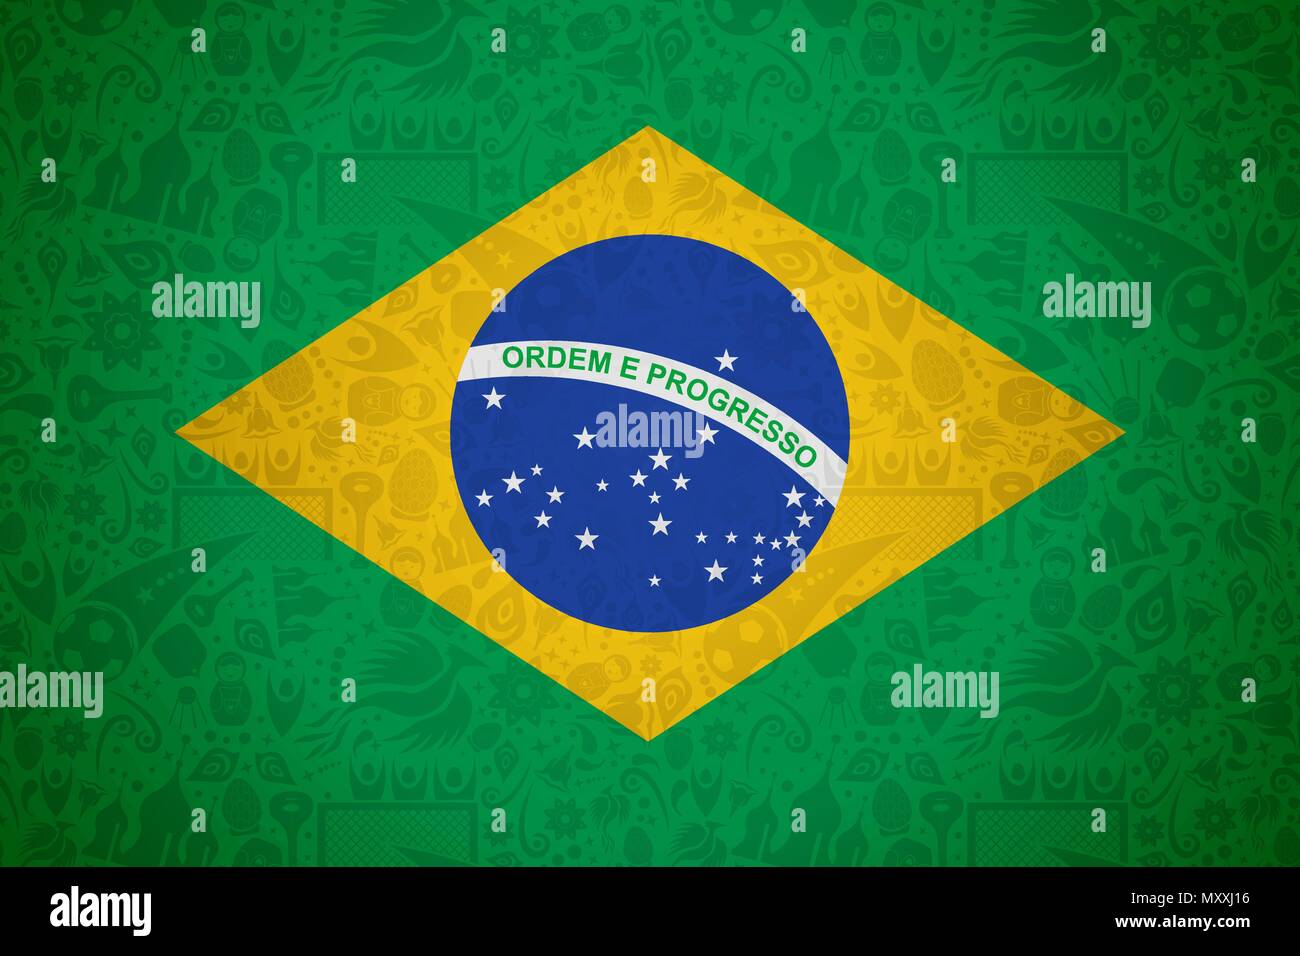 Brasilien Flagge Hintergrund für besondere Fußball-Sport Ereignis. Mit russischen Stil Ikonen. EPS 10 Vektor. Stock Vektor